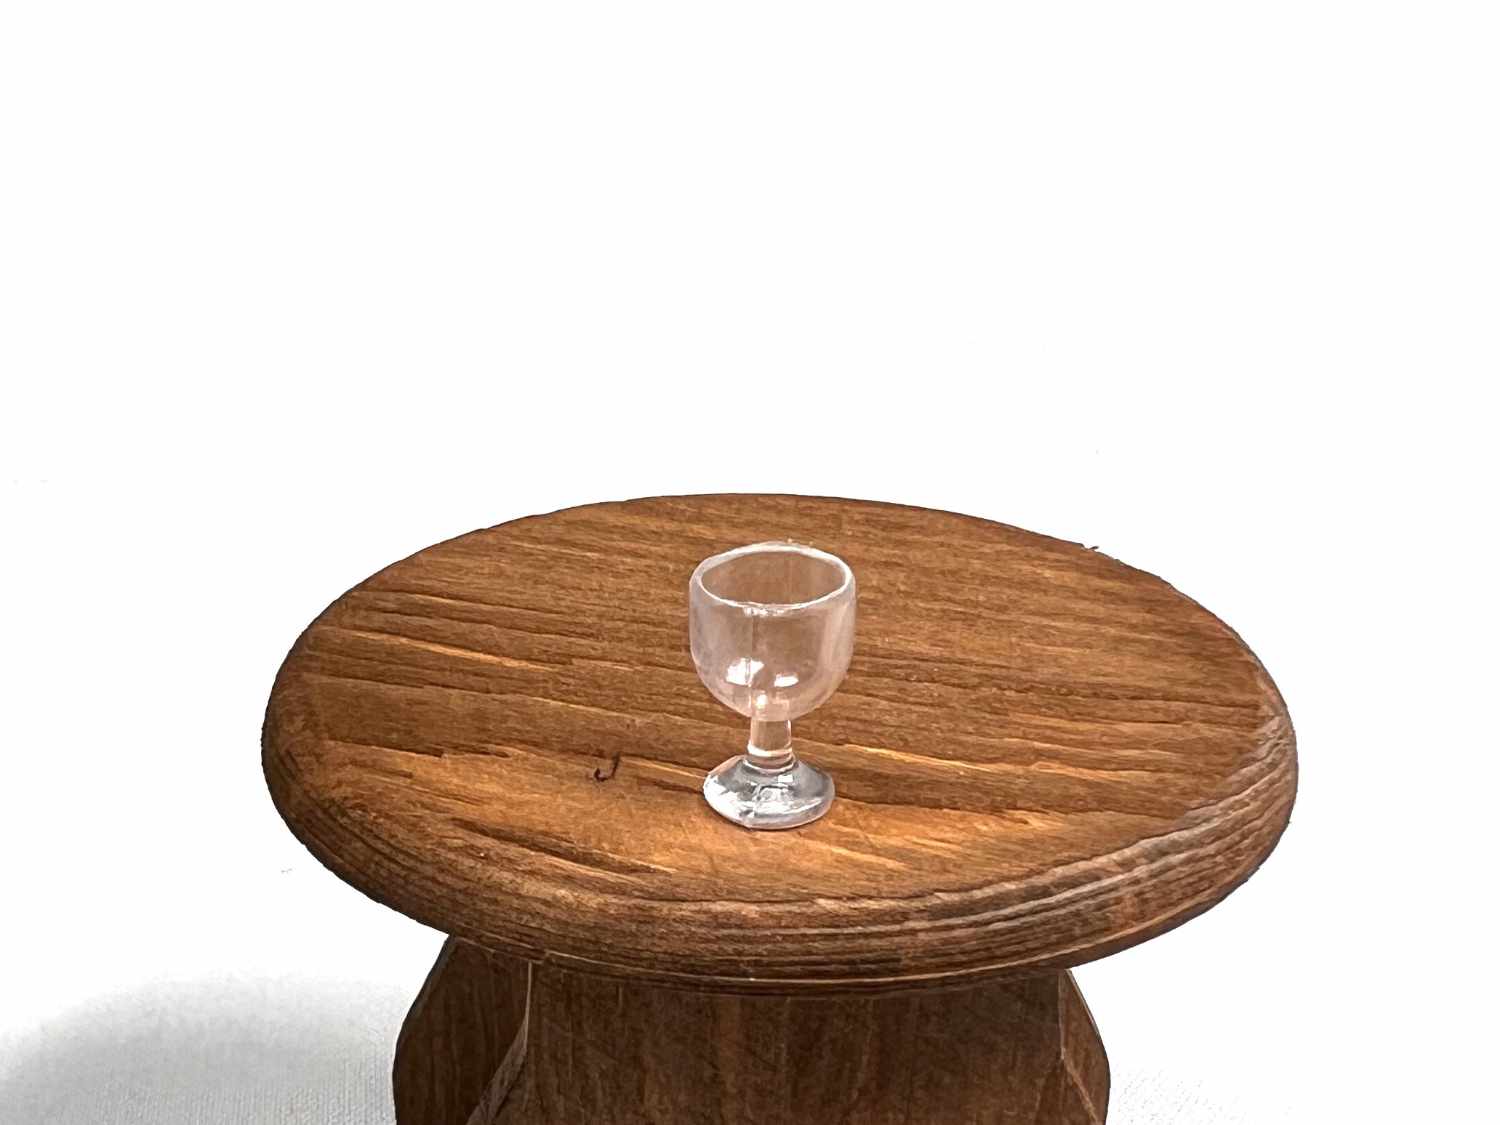 Miniatur Glas, leer auf Tisch